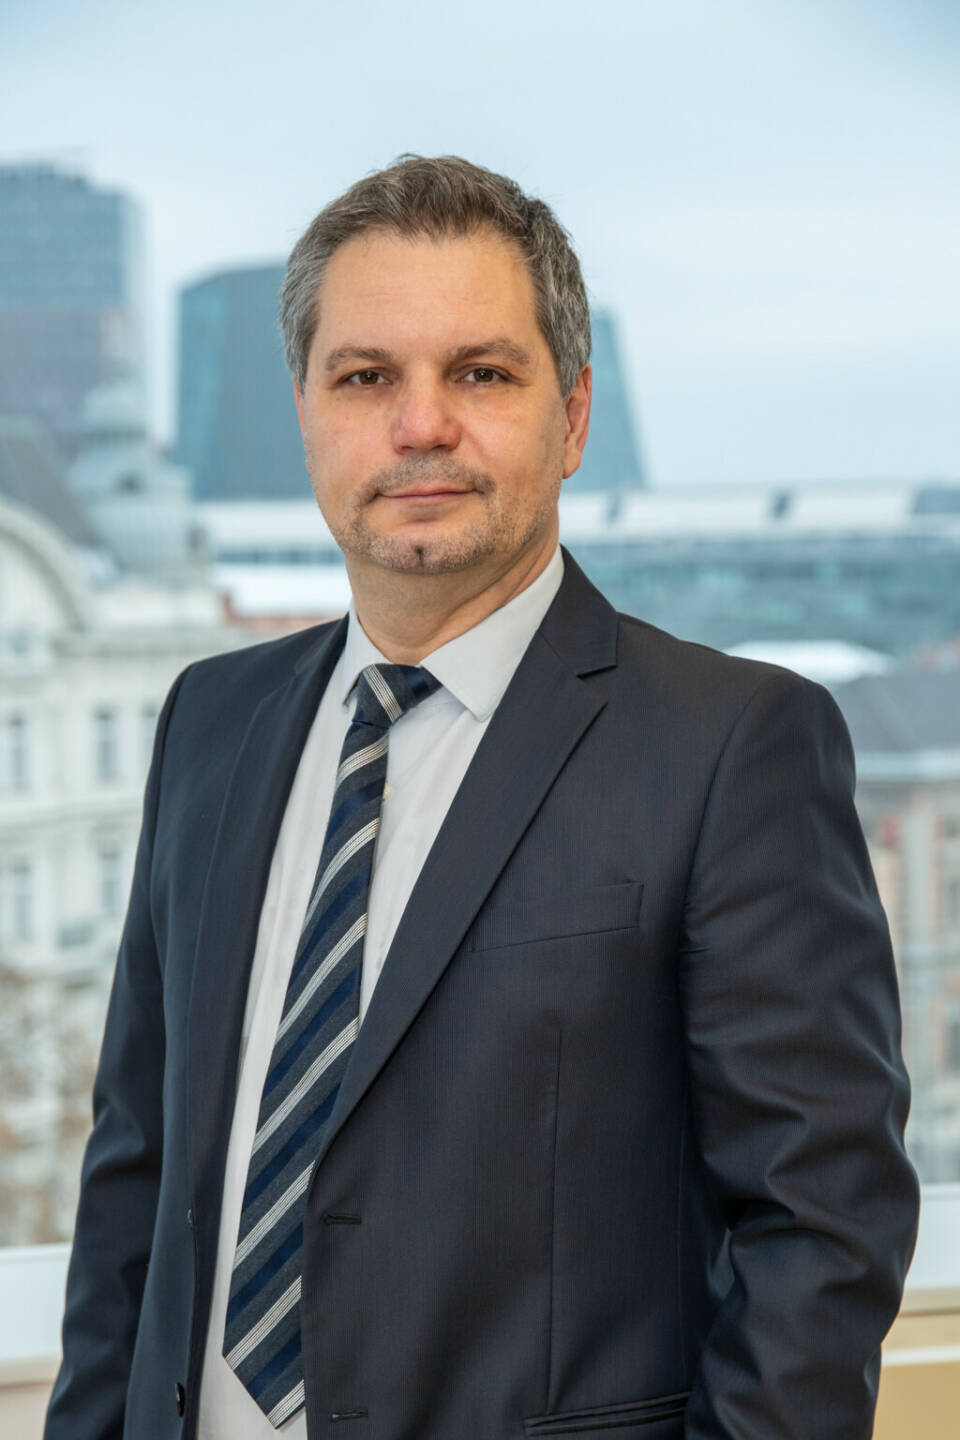 Thomas Steinberger, CIO, Mitglied der Wissenschaftlichen Leitung und Geschäftsführer von Spängler IQAM Invest (Credit: Spängler IQAM Invest)